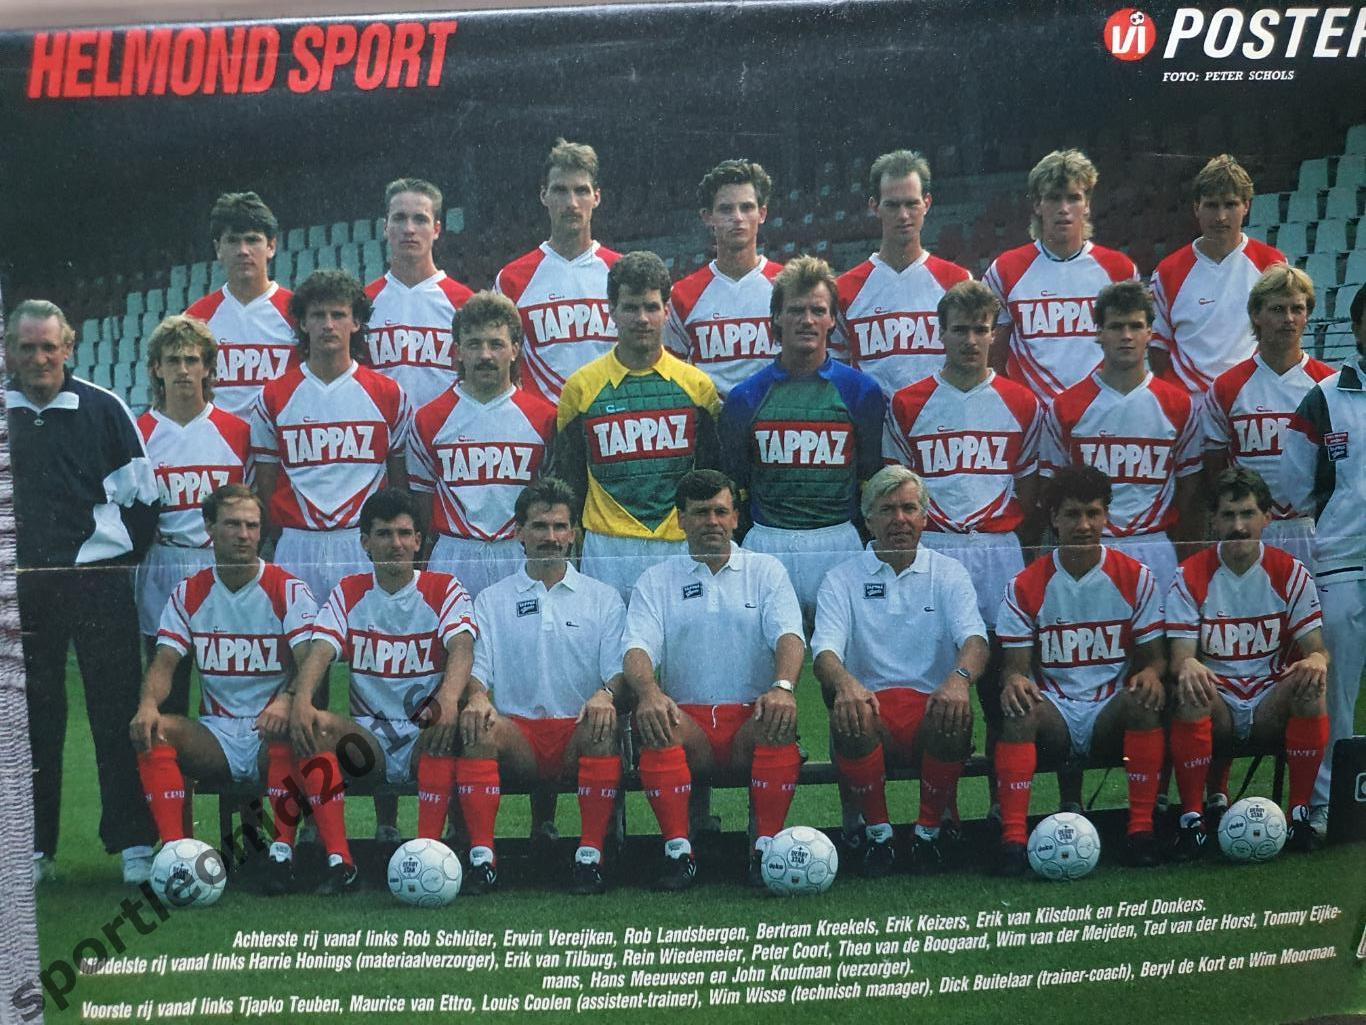 Voetbal International 1988.Годовая подписка.52 номера +4 спецвыпуска к Евро-88.3 6